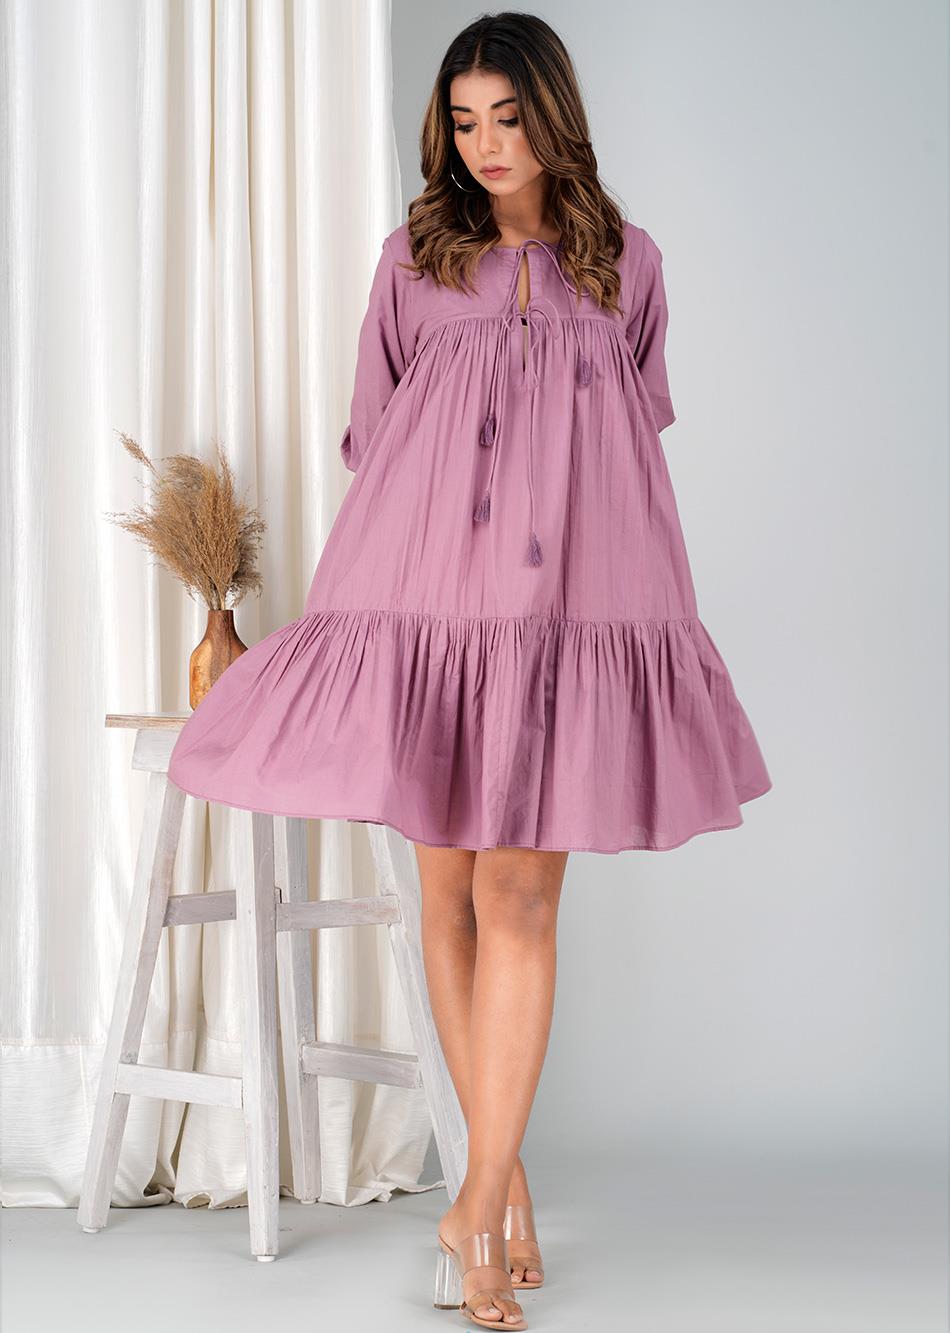 Grape Wine Mini Tier Dress  By Jovi Fashion